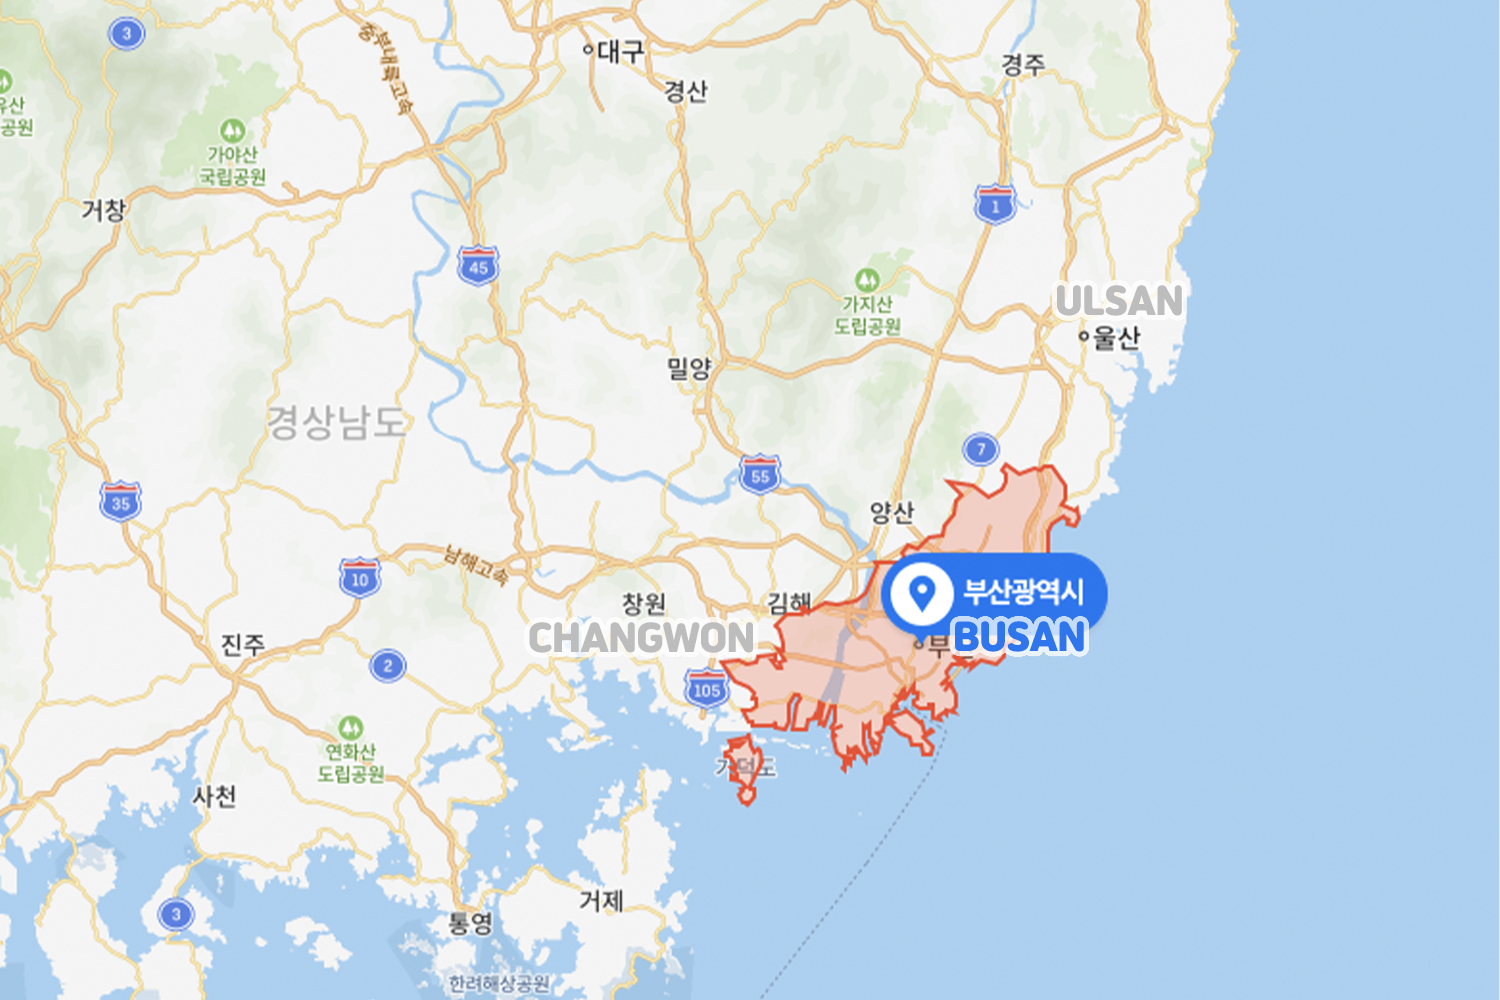 map of busan